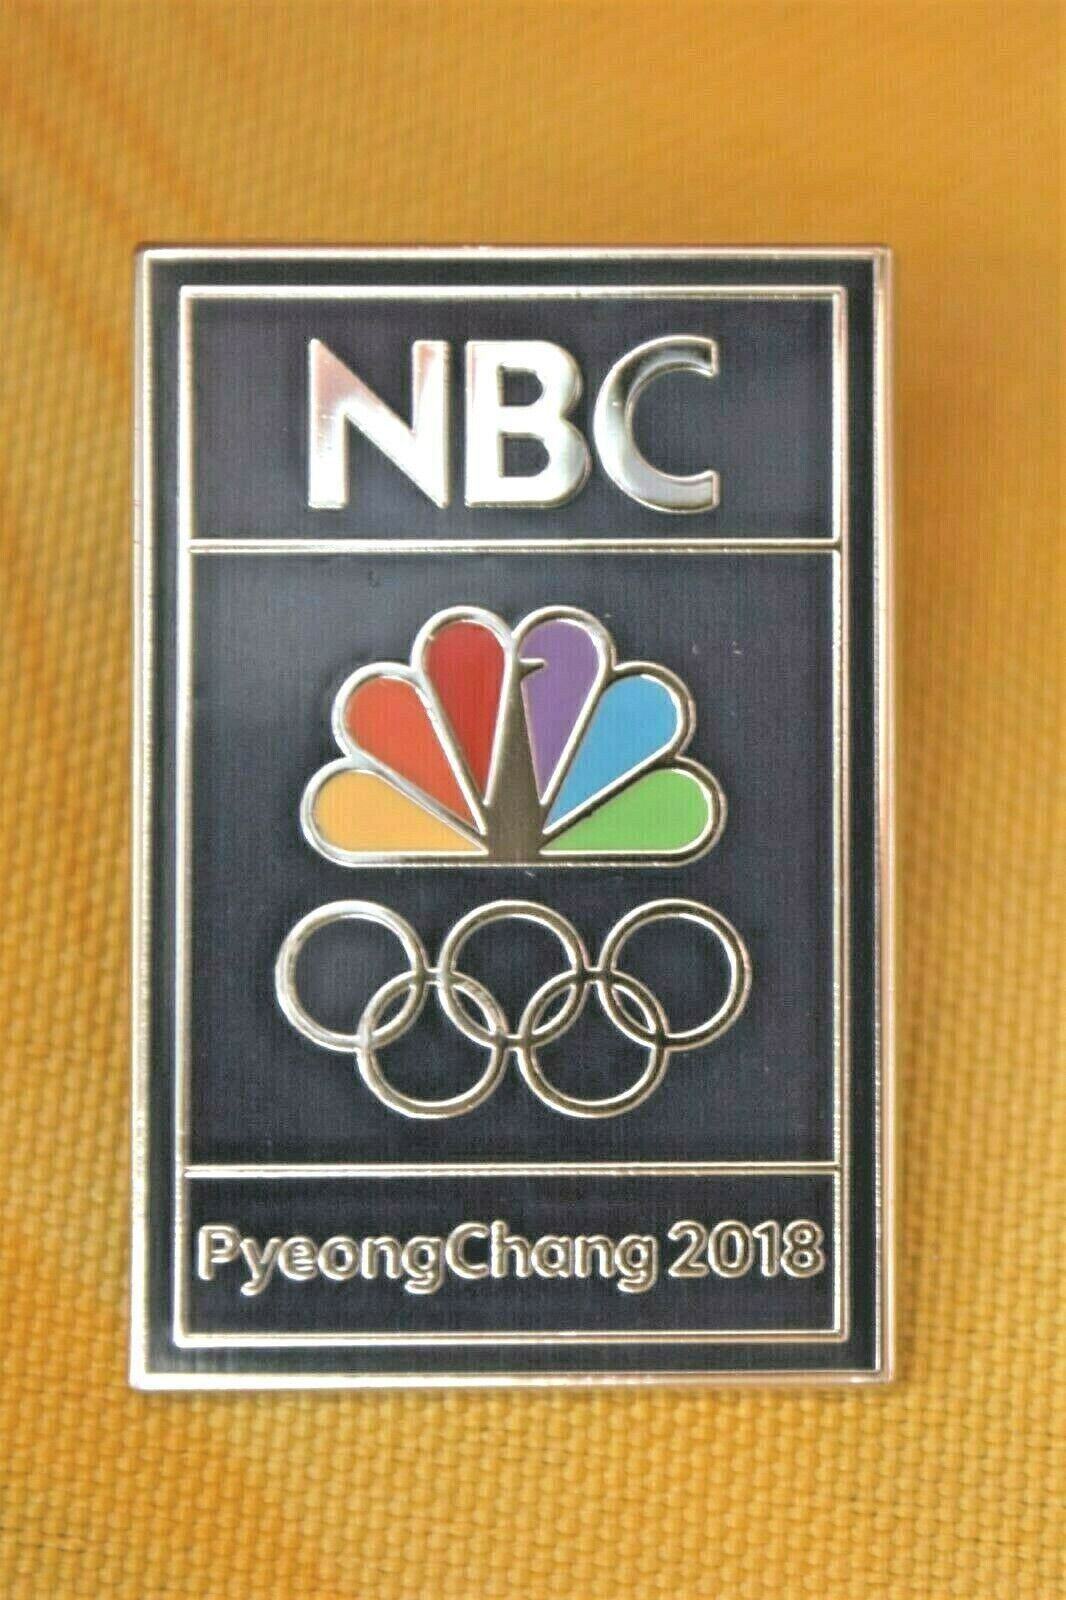 PYEONGCHANG 2018 NBC OLYMPIC MEDIA PIN / BADGE STYLE